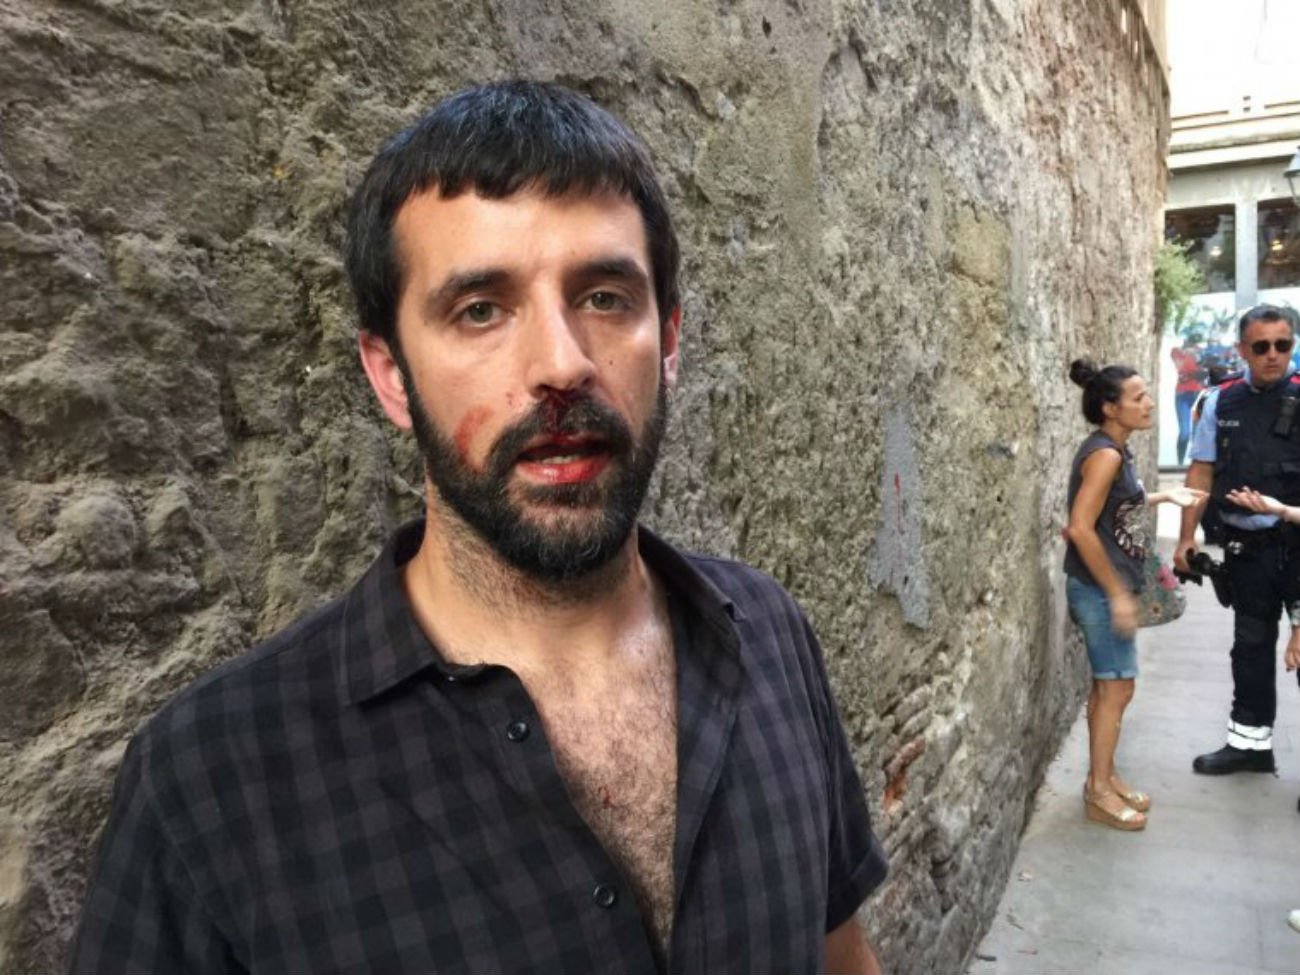 El fotoperiodista Jordi Borràs, agredido por un hombre que se identifica como Policía Nacional